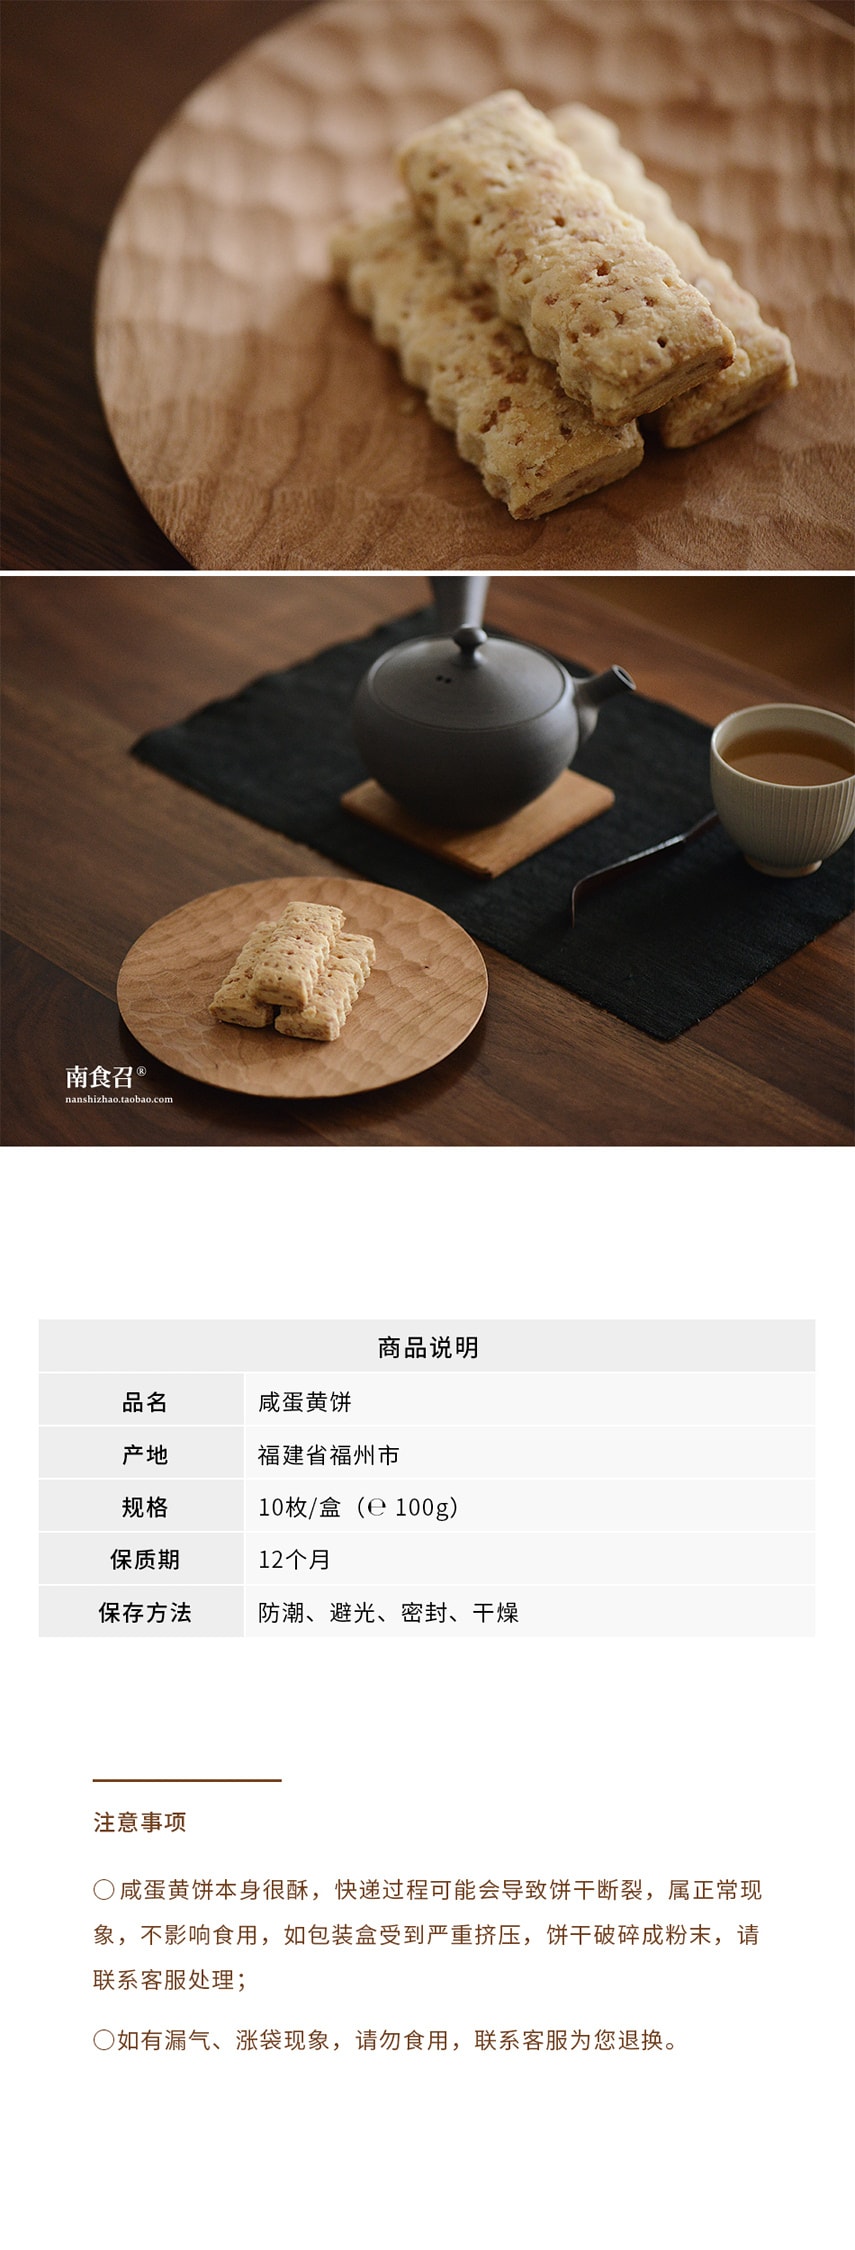 【网红零食】咸蛋黄饼干 100克 本真原味 恩典酥 地道台湾工艺 南食召品牌